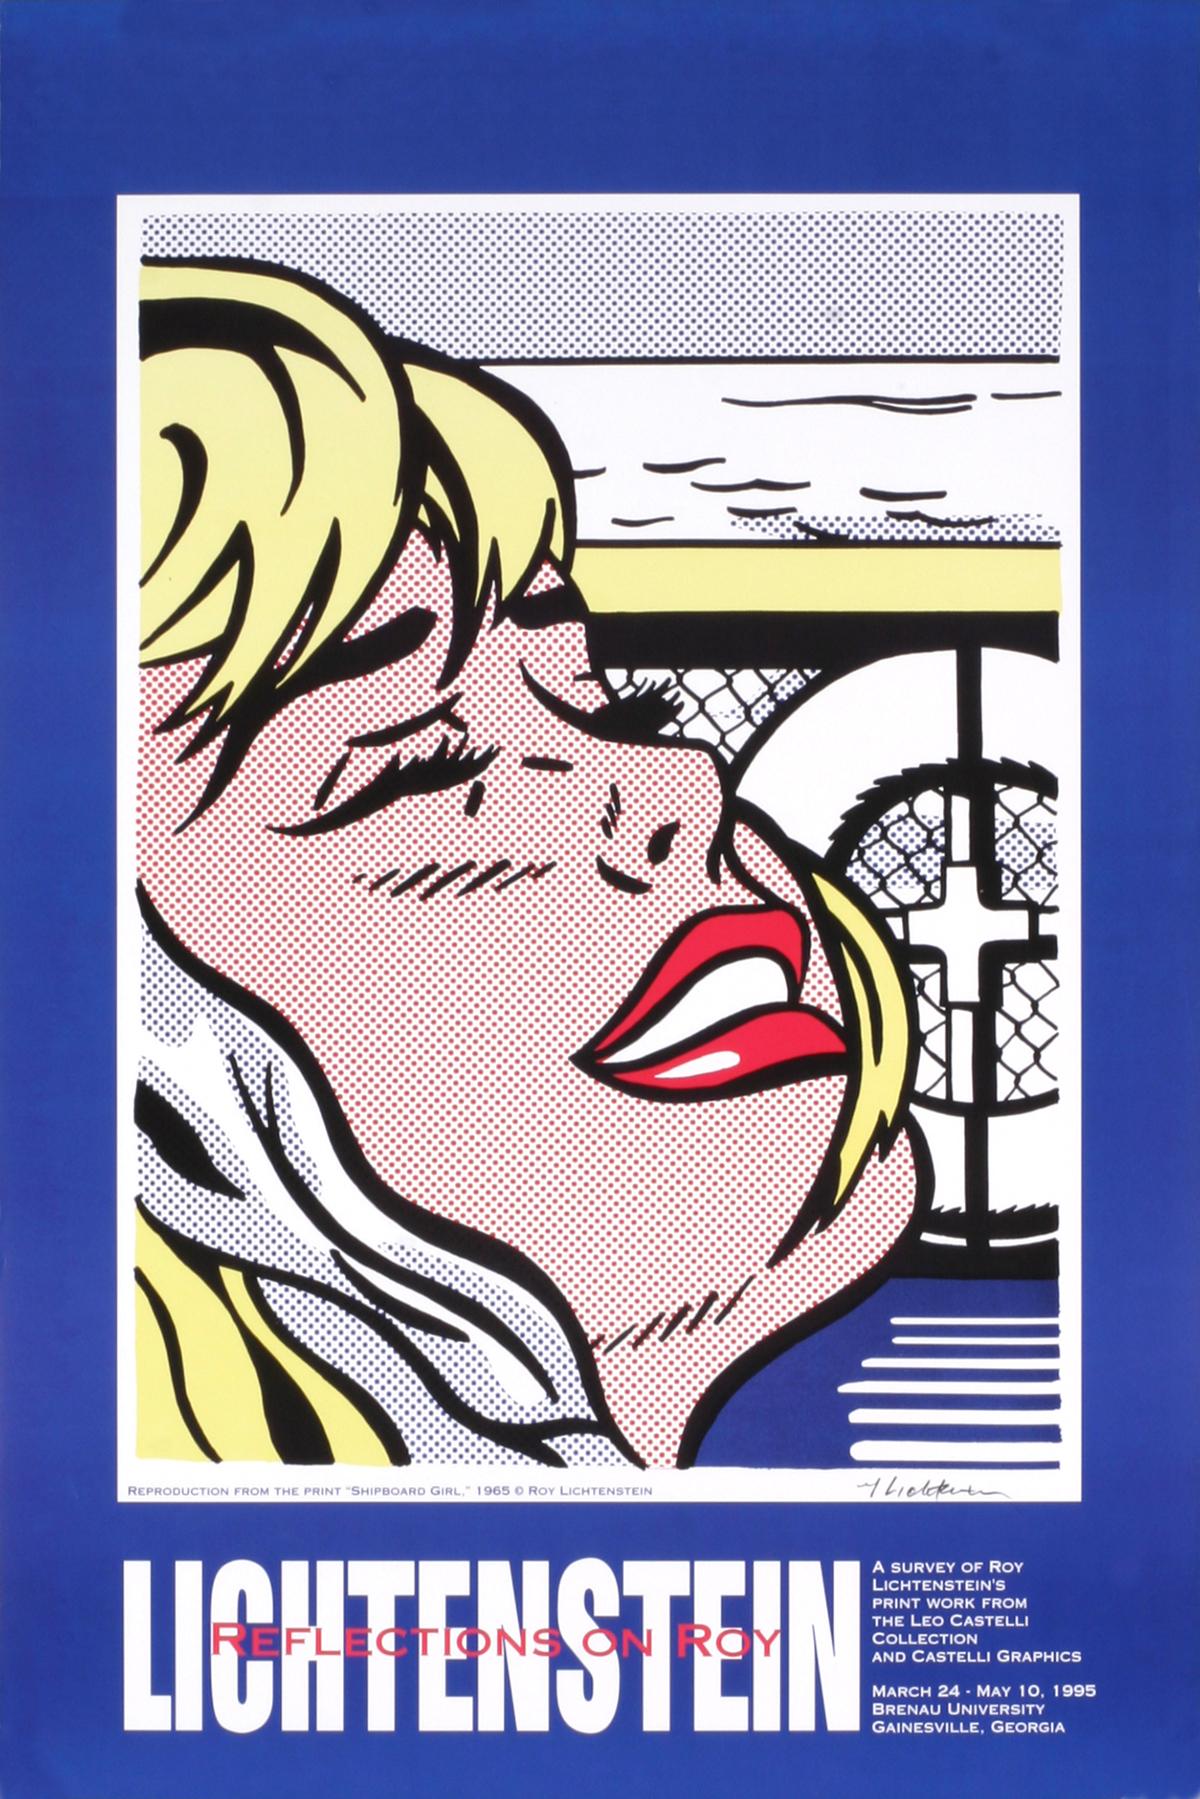 Shipboard Girl-ORIGINAL Exhibition Poster (Affiche d'exposition originale) - Print de Roy Lichtenstein